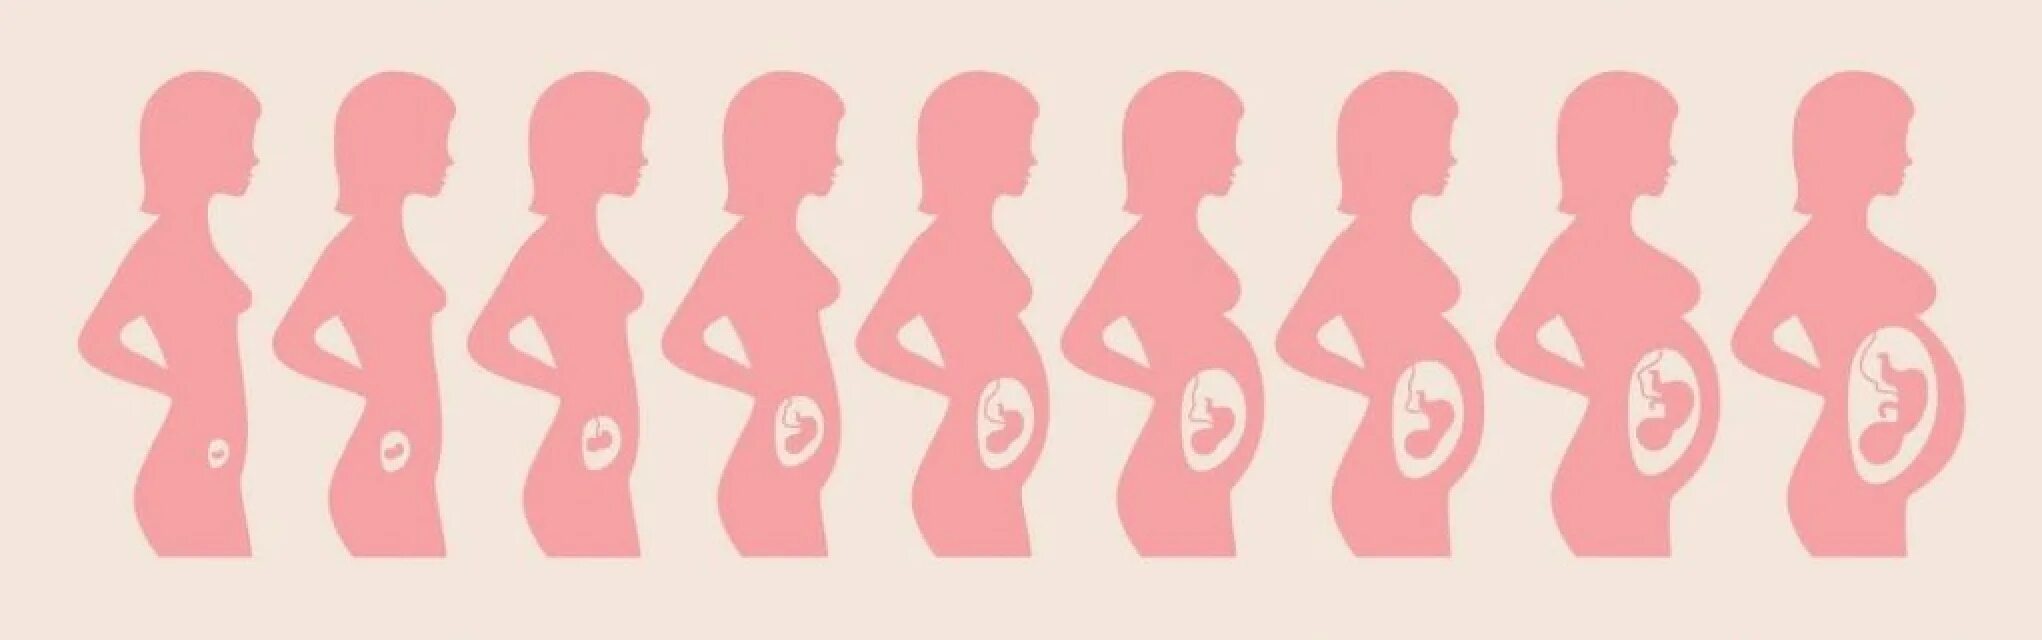 Матка на 25 неделе. Размеры матки в 1 триместре беременности. Схема развития беременности по неделям. Стадии развития плода при беременности по неделям. Расположение ребенка в животе по неделям.